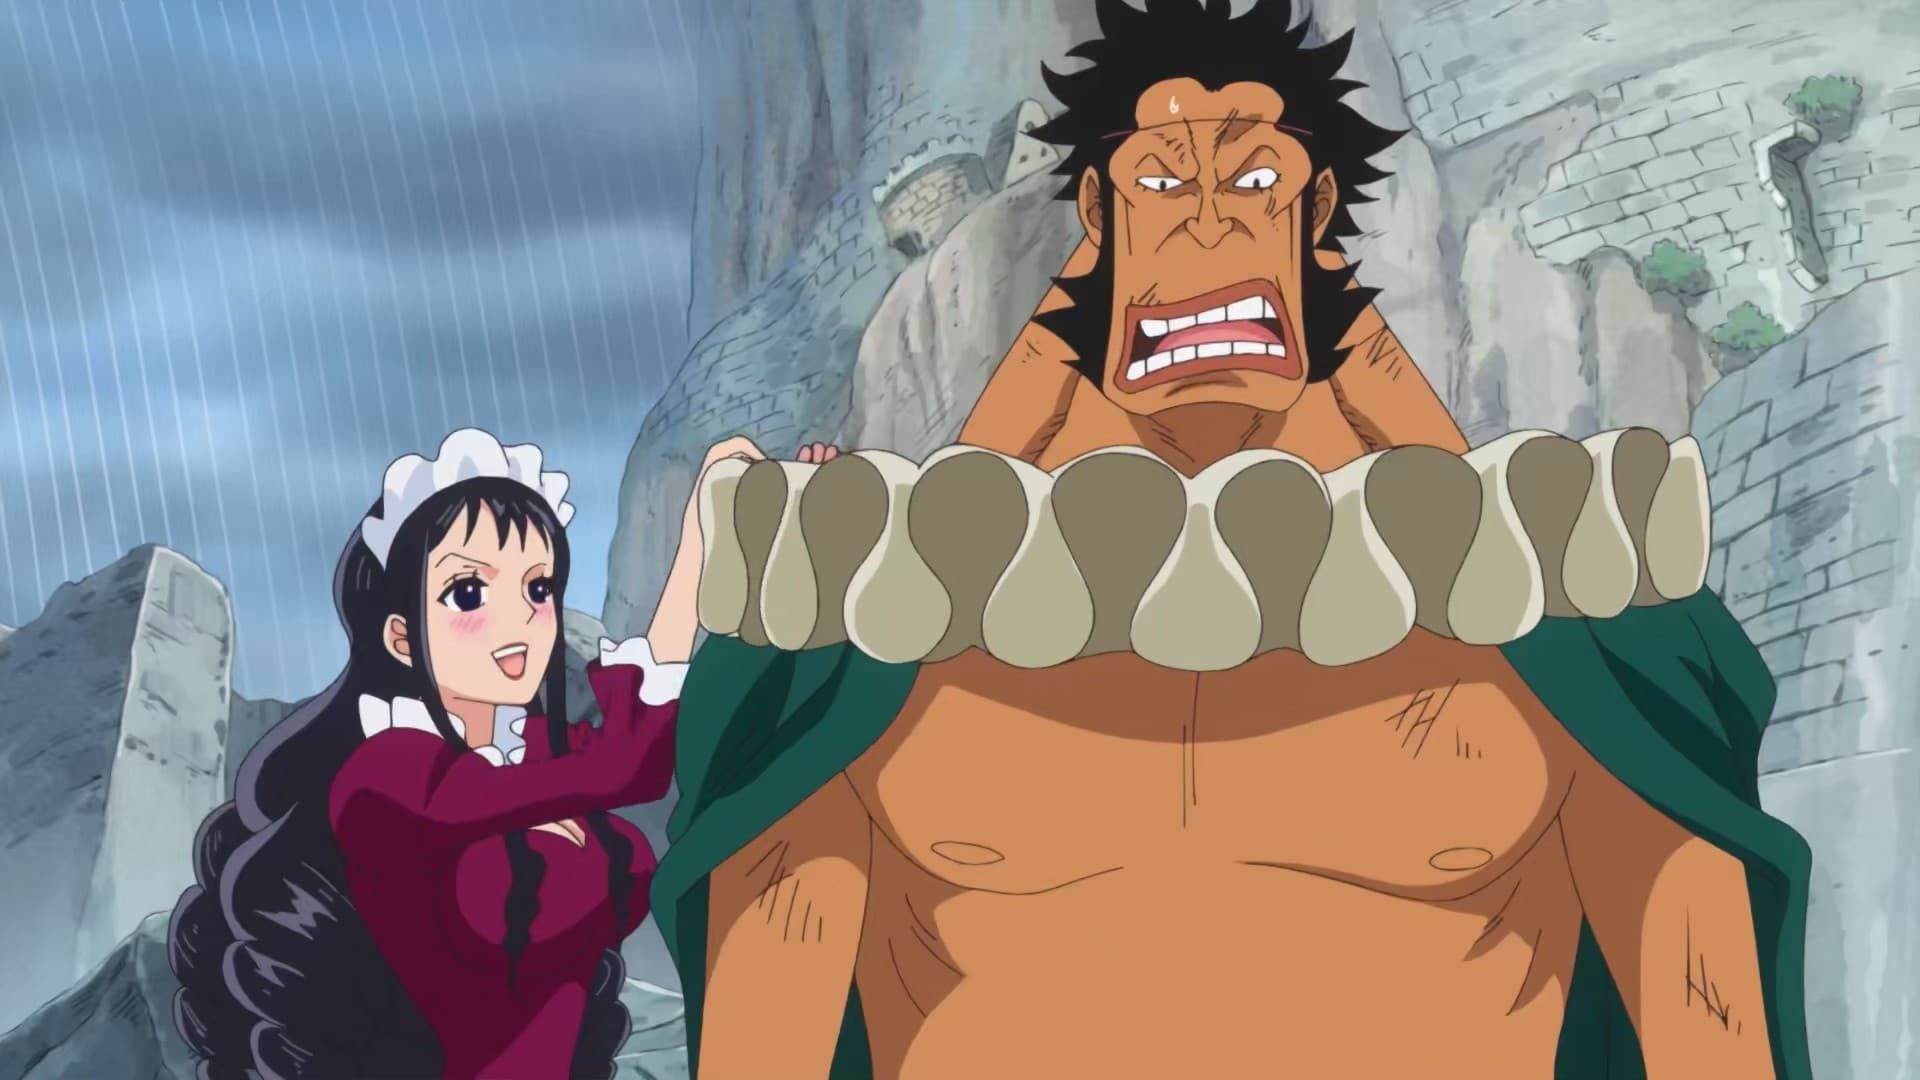 Watch One Piece · Dressrosa Full Episodes Free Online - Plex